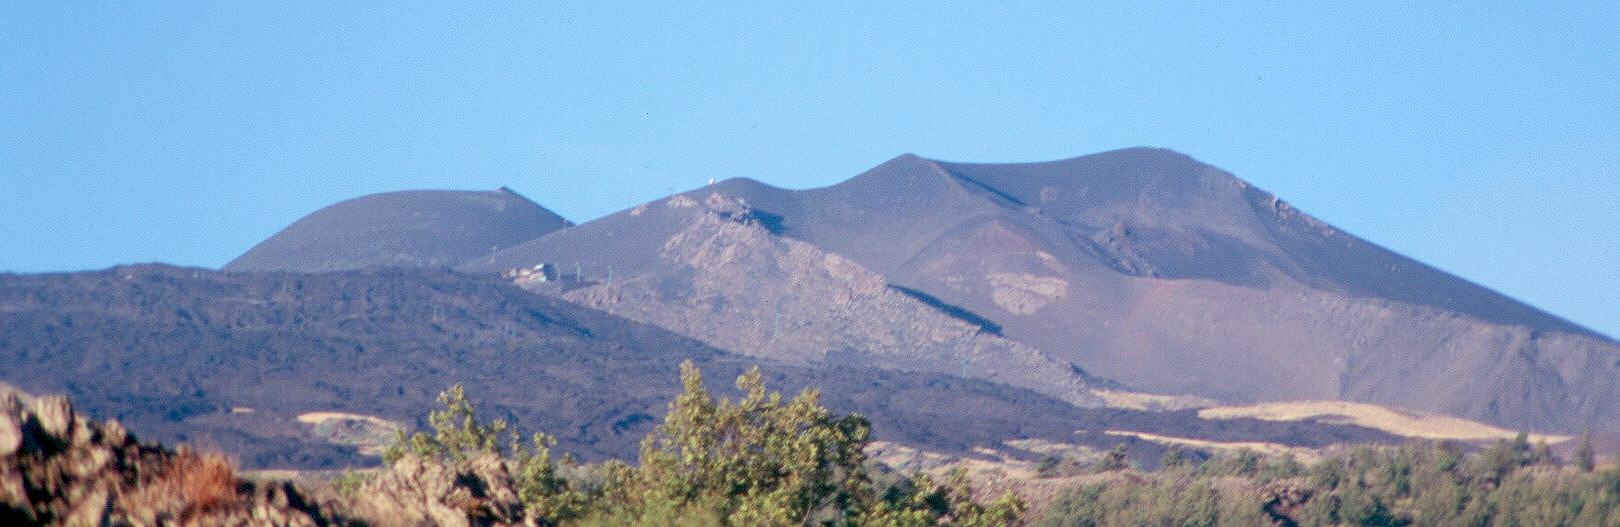 1763. Erupción que levanta La Montañola (fotografía de 2001)